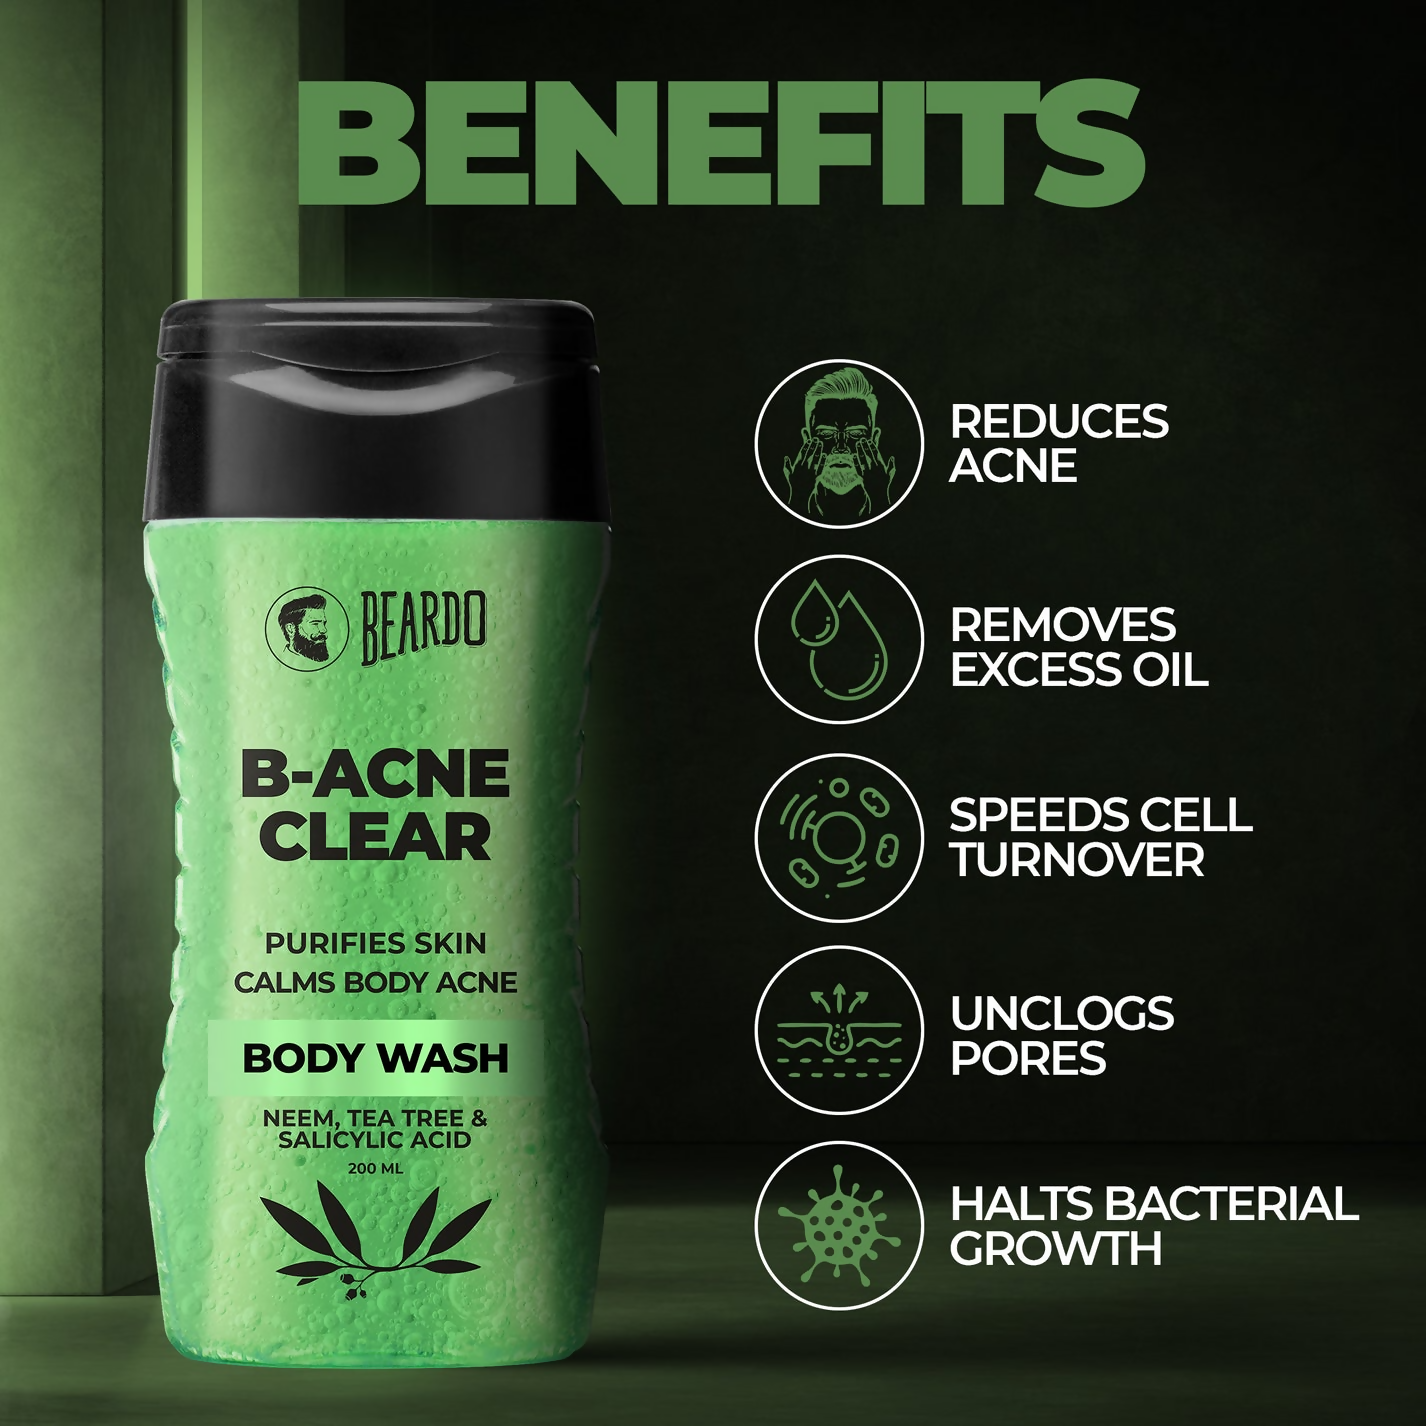 Beardo B-Acne Clear Body Wash